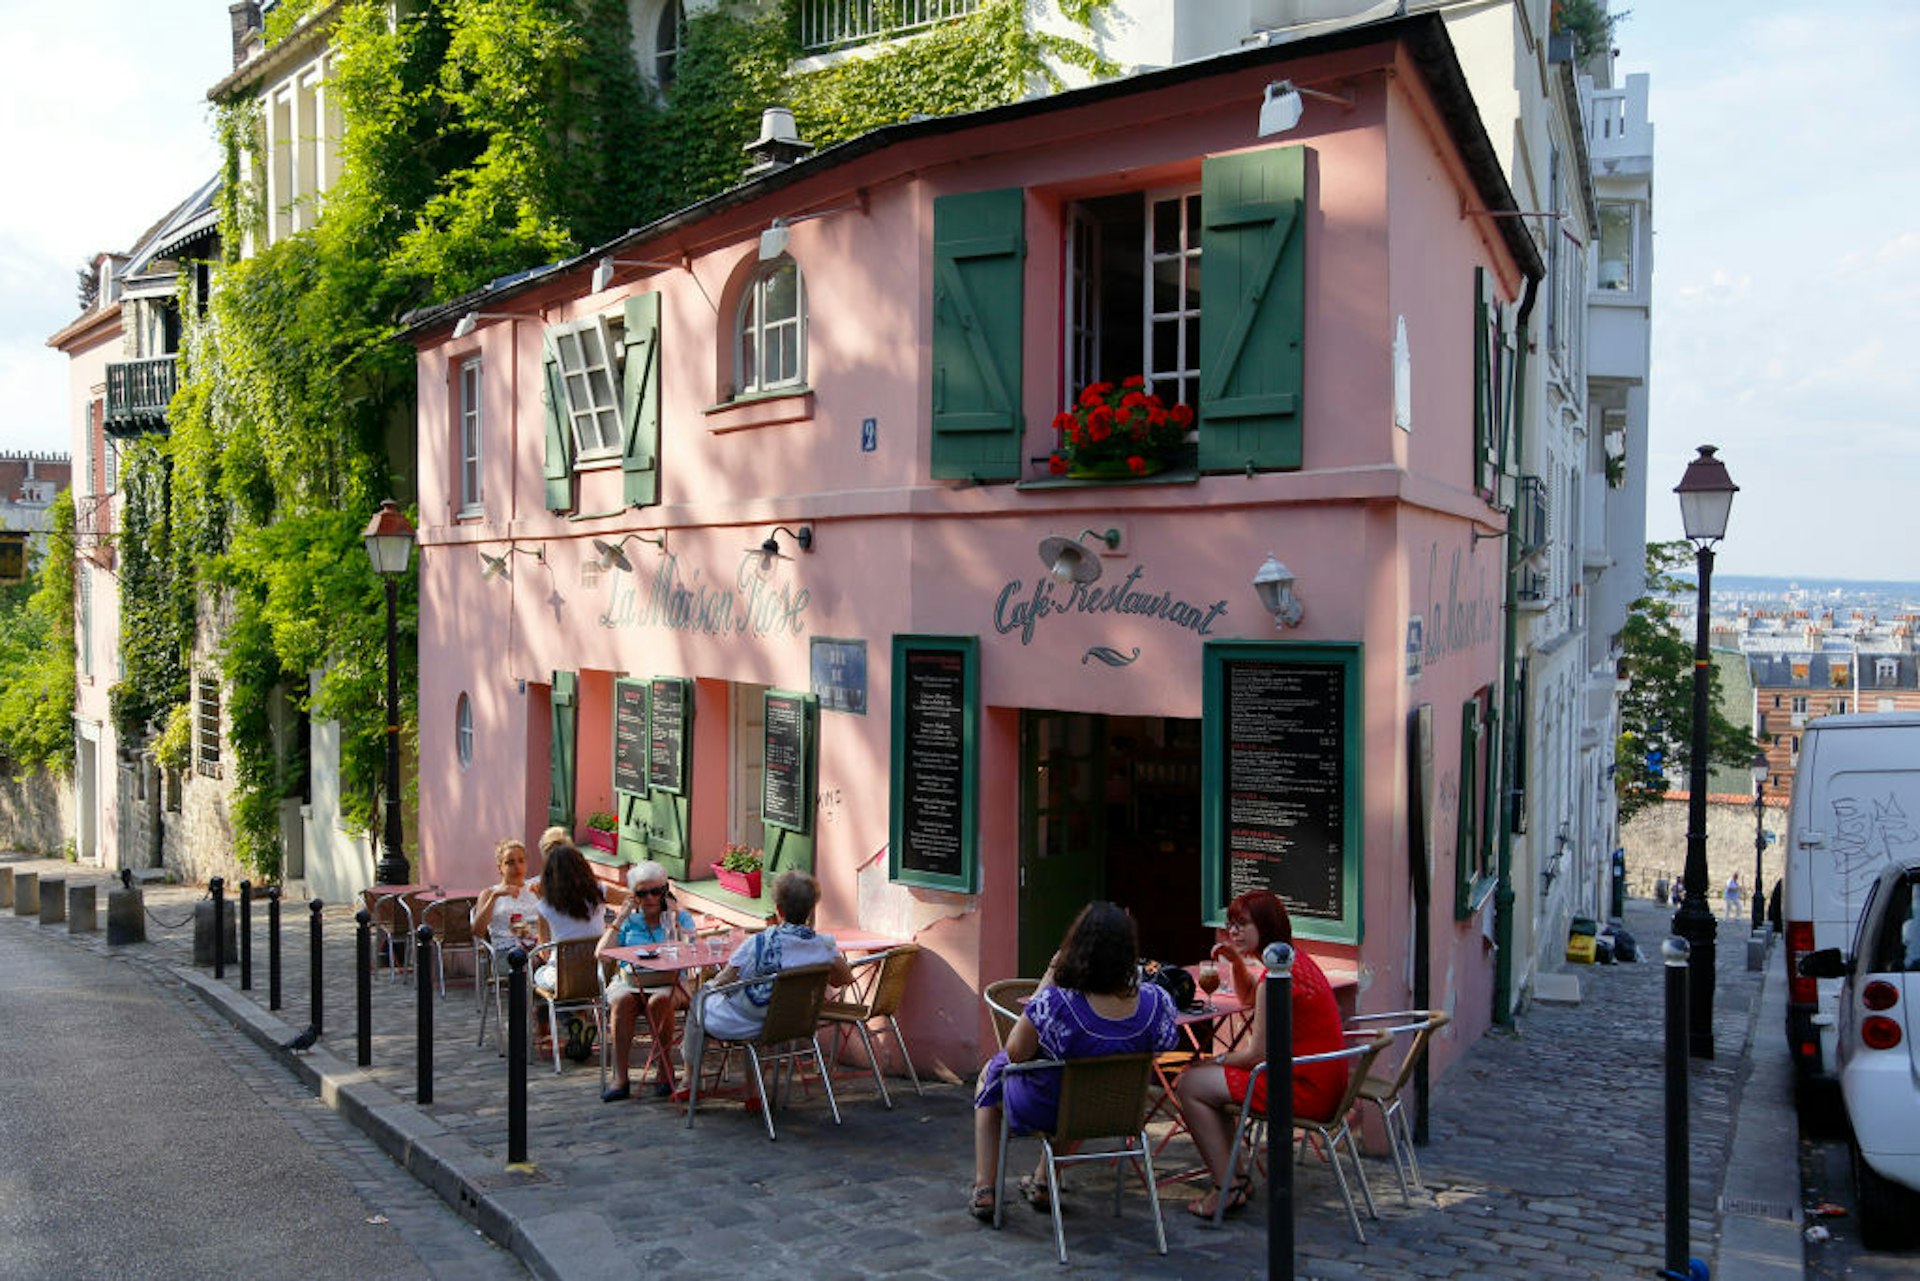 La Maison, Rose French Cafe, Rue de lAbreuvoir, Paris France